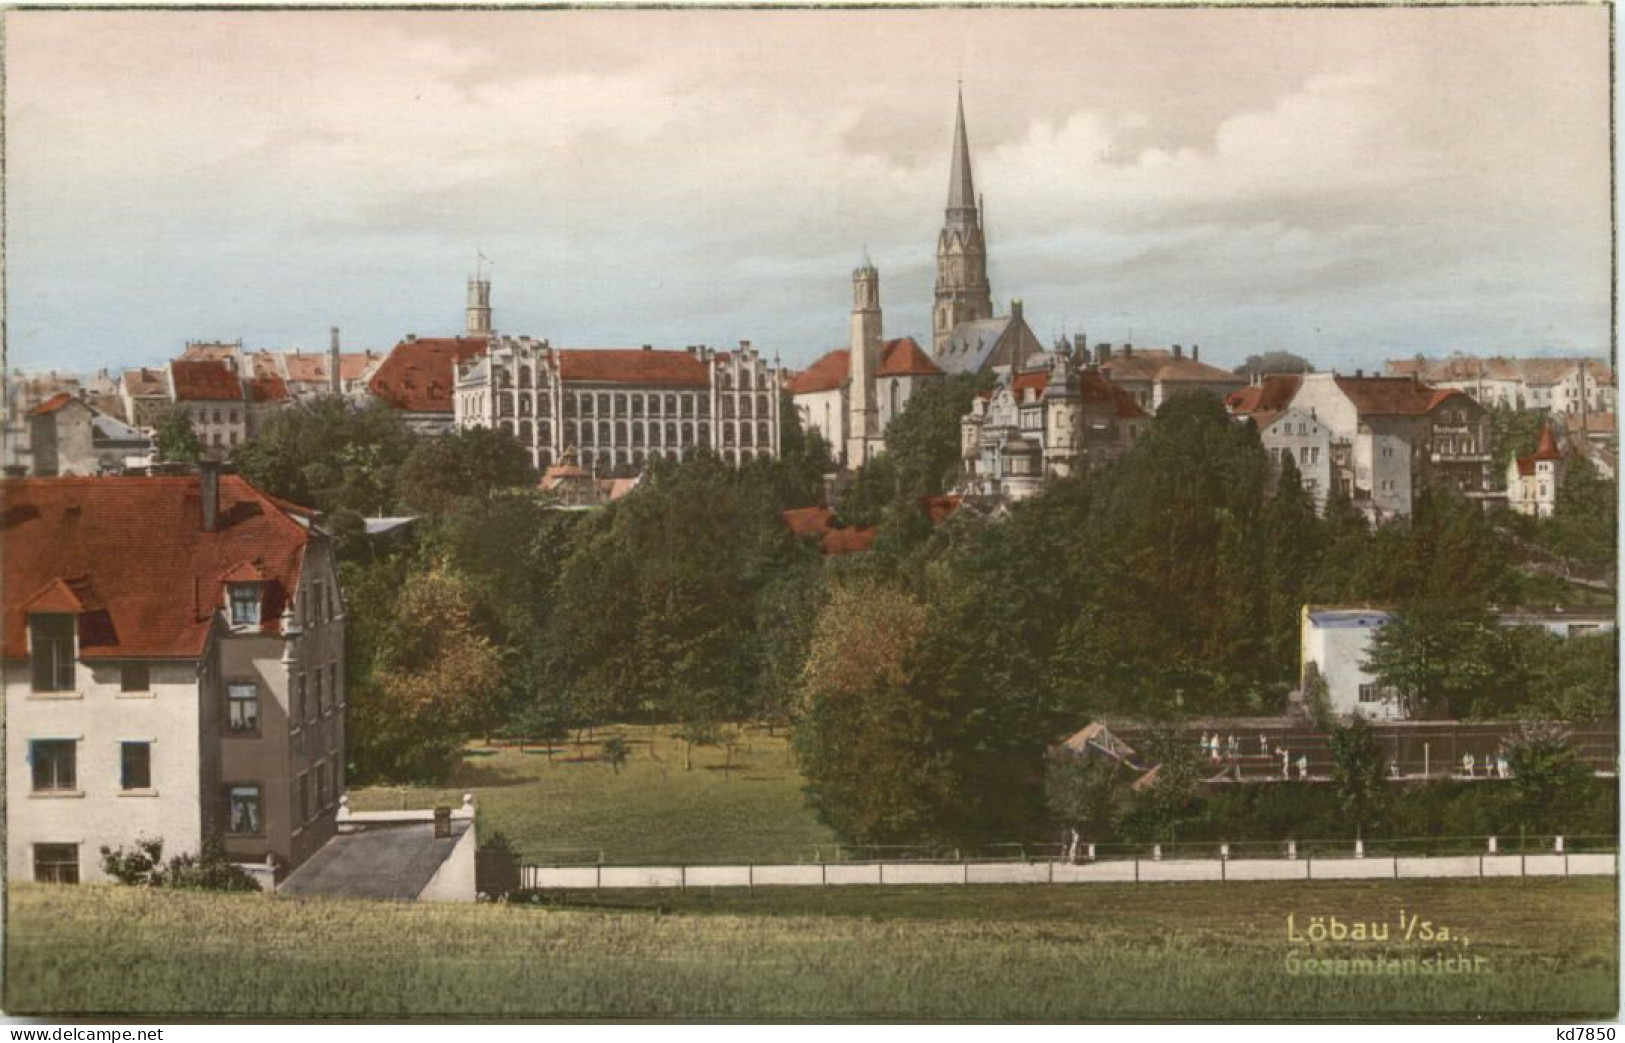 Löbau In Sachsen - Loebau